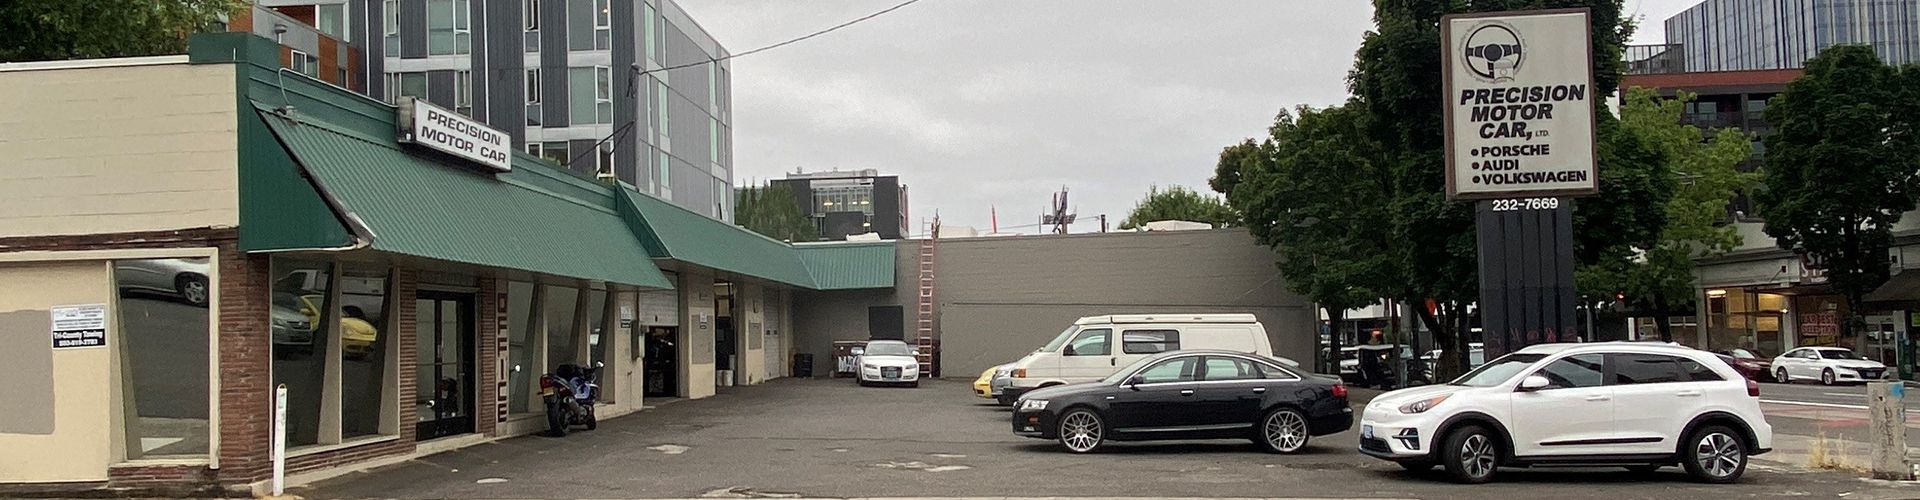 Auto Repair Shop in Portland